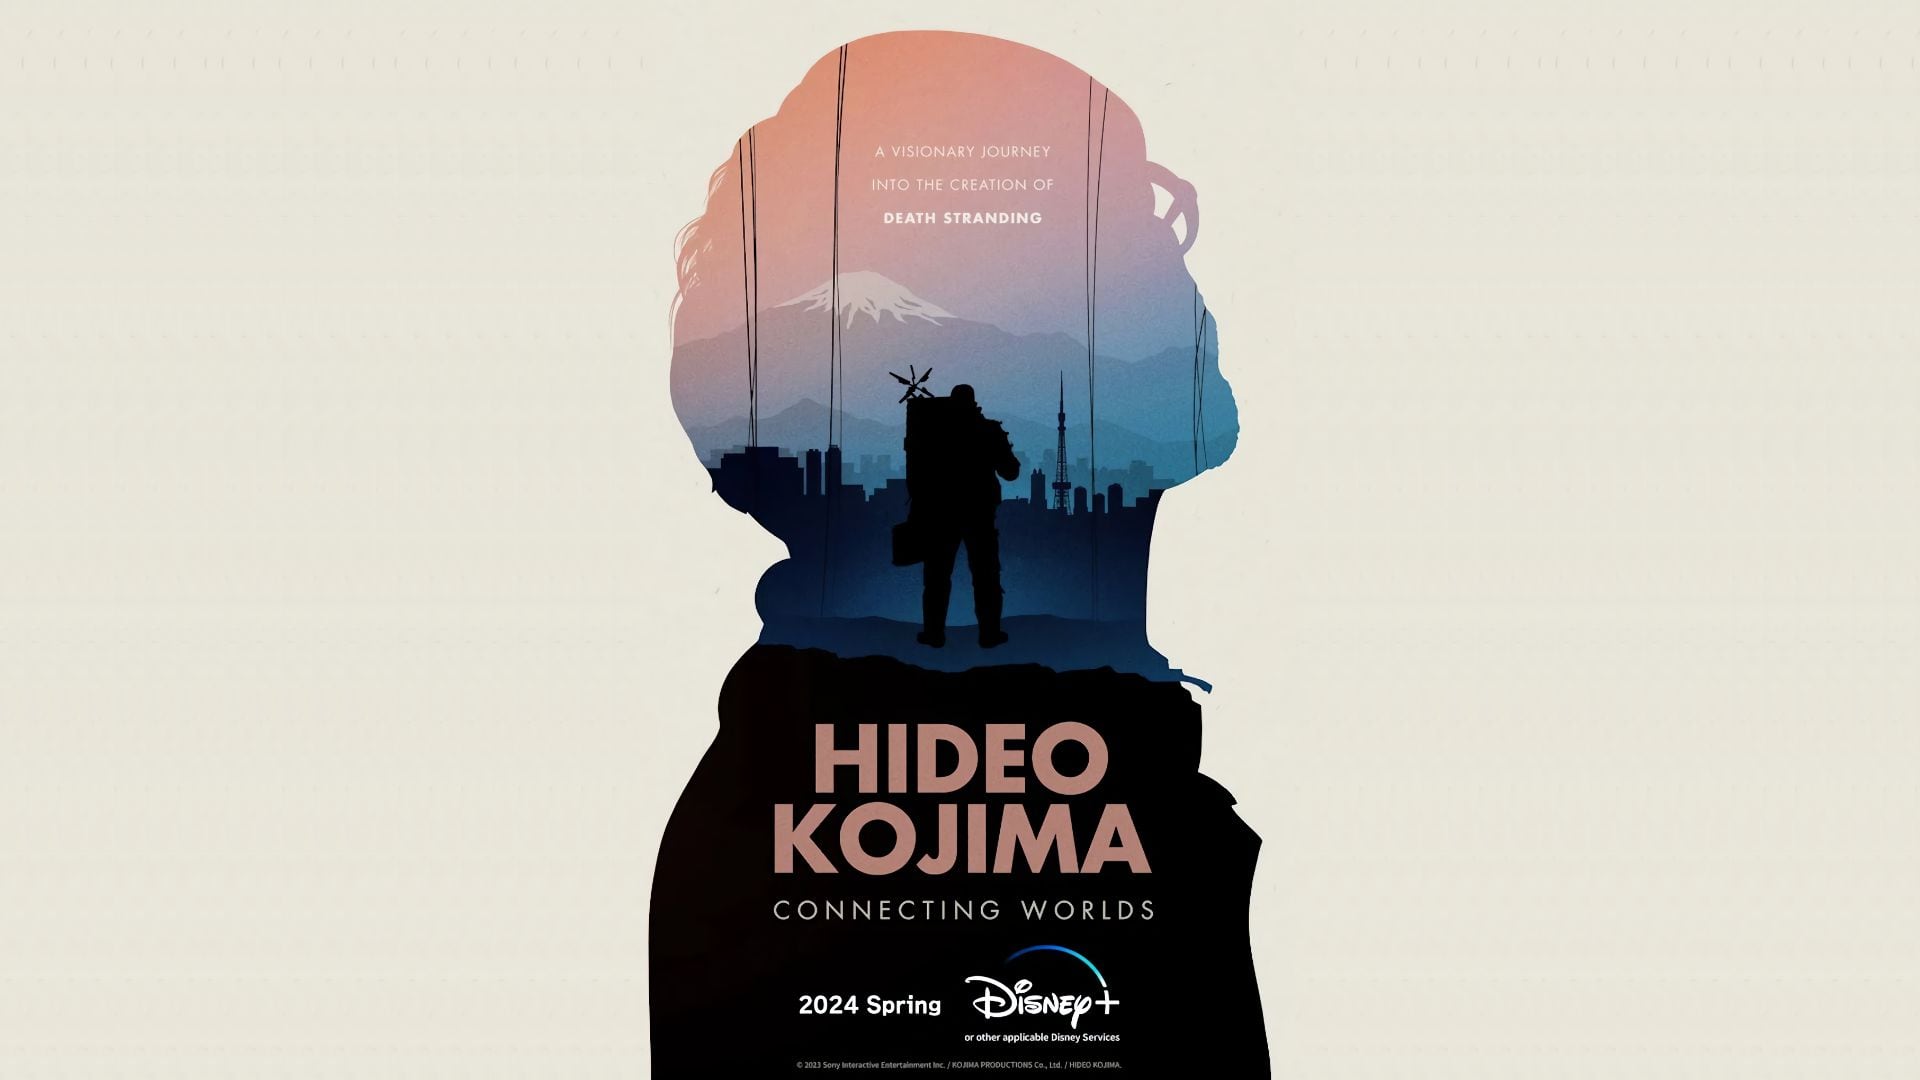 El propio creador de videojuegos ha revelado la plataforma de streaming en la que se estrenará su documental Hideo Kojima: Connecting Worlds este 2024.